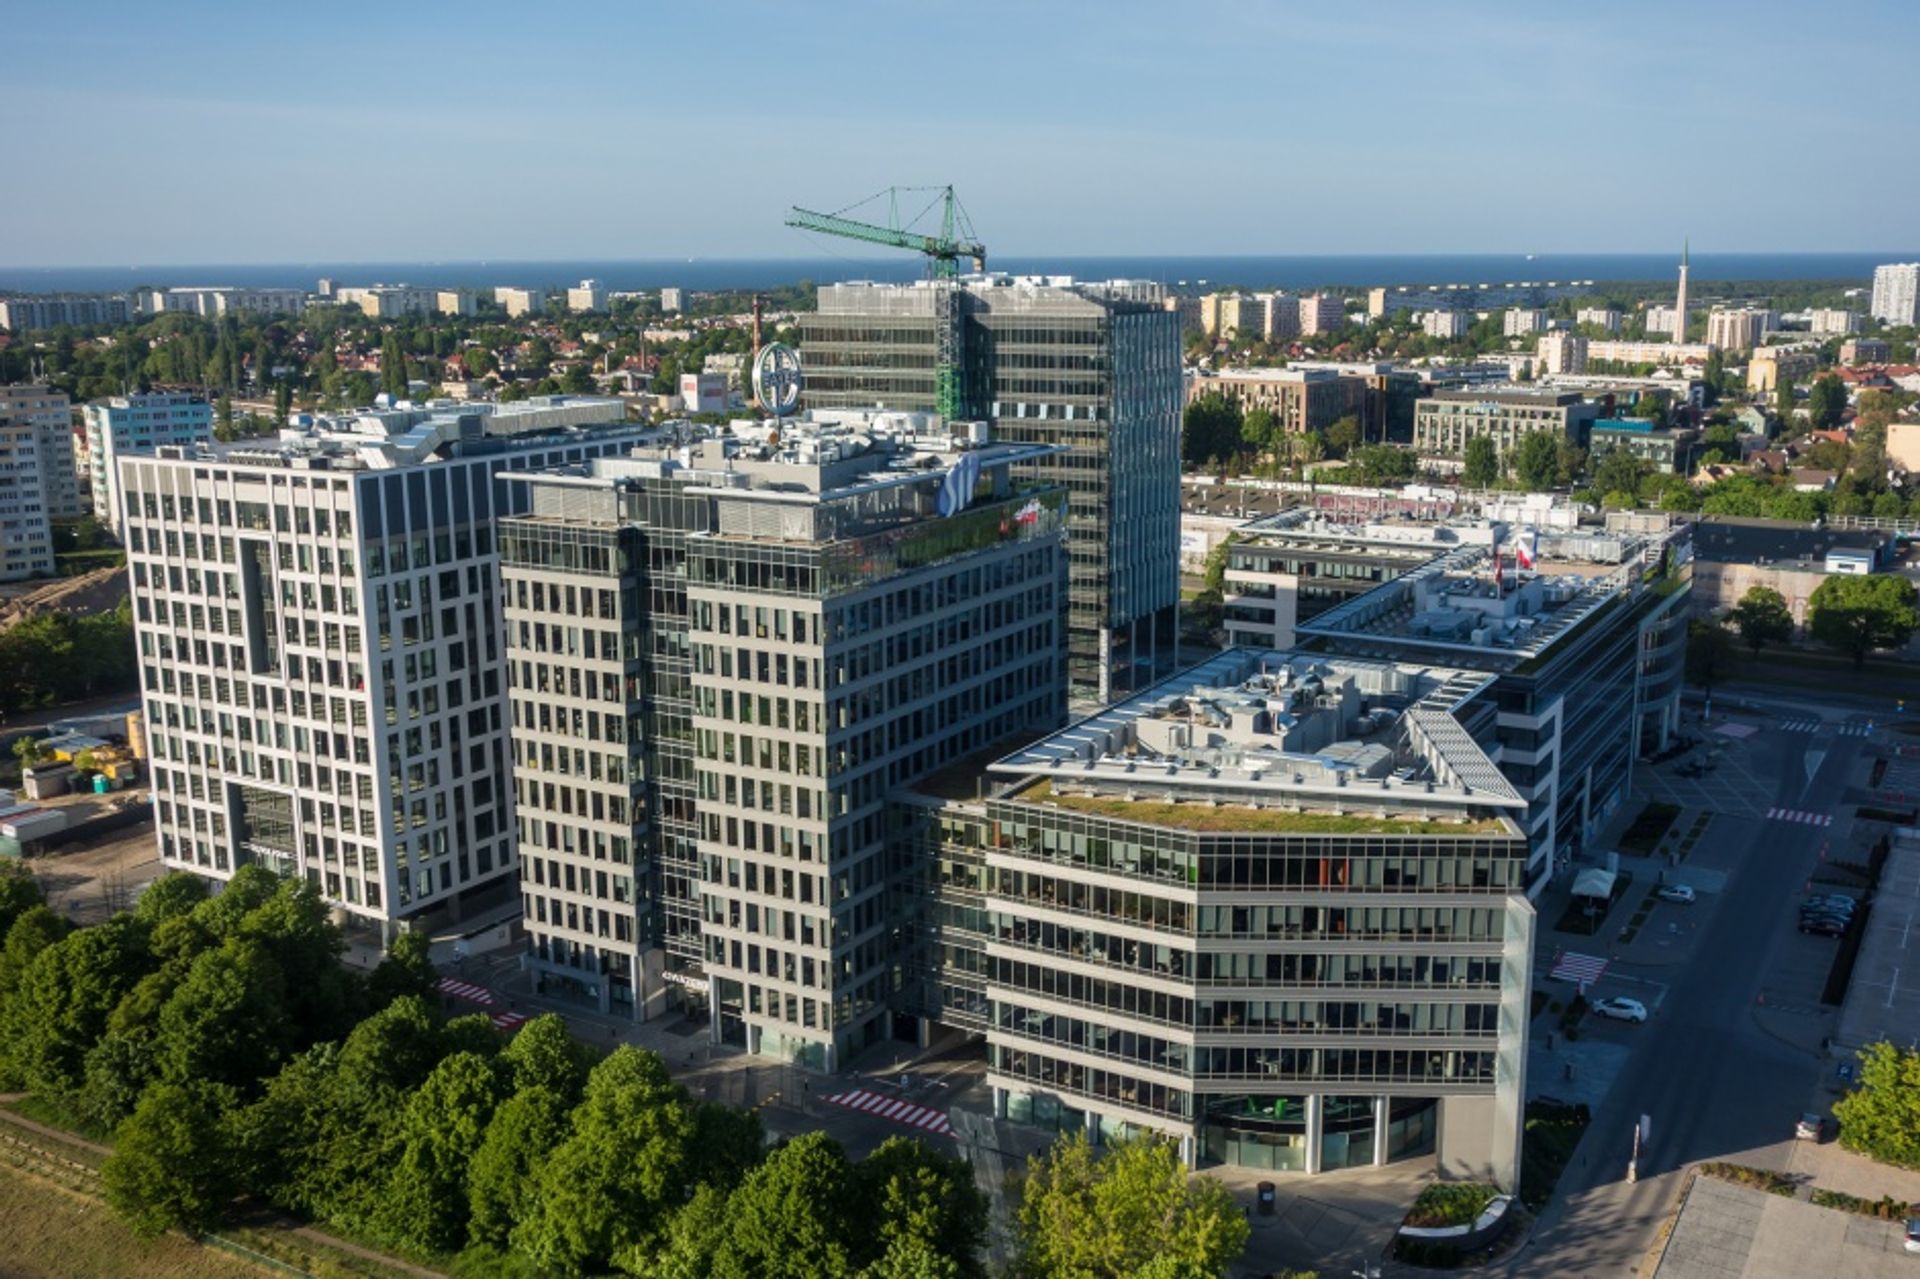  Globalny doradca otwiera trzecie biuro w Polsce – w Olivia Business Centre w Gdańsku